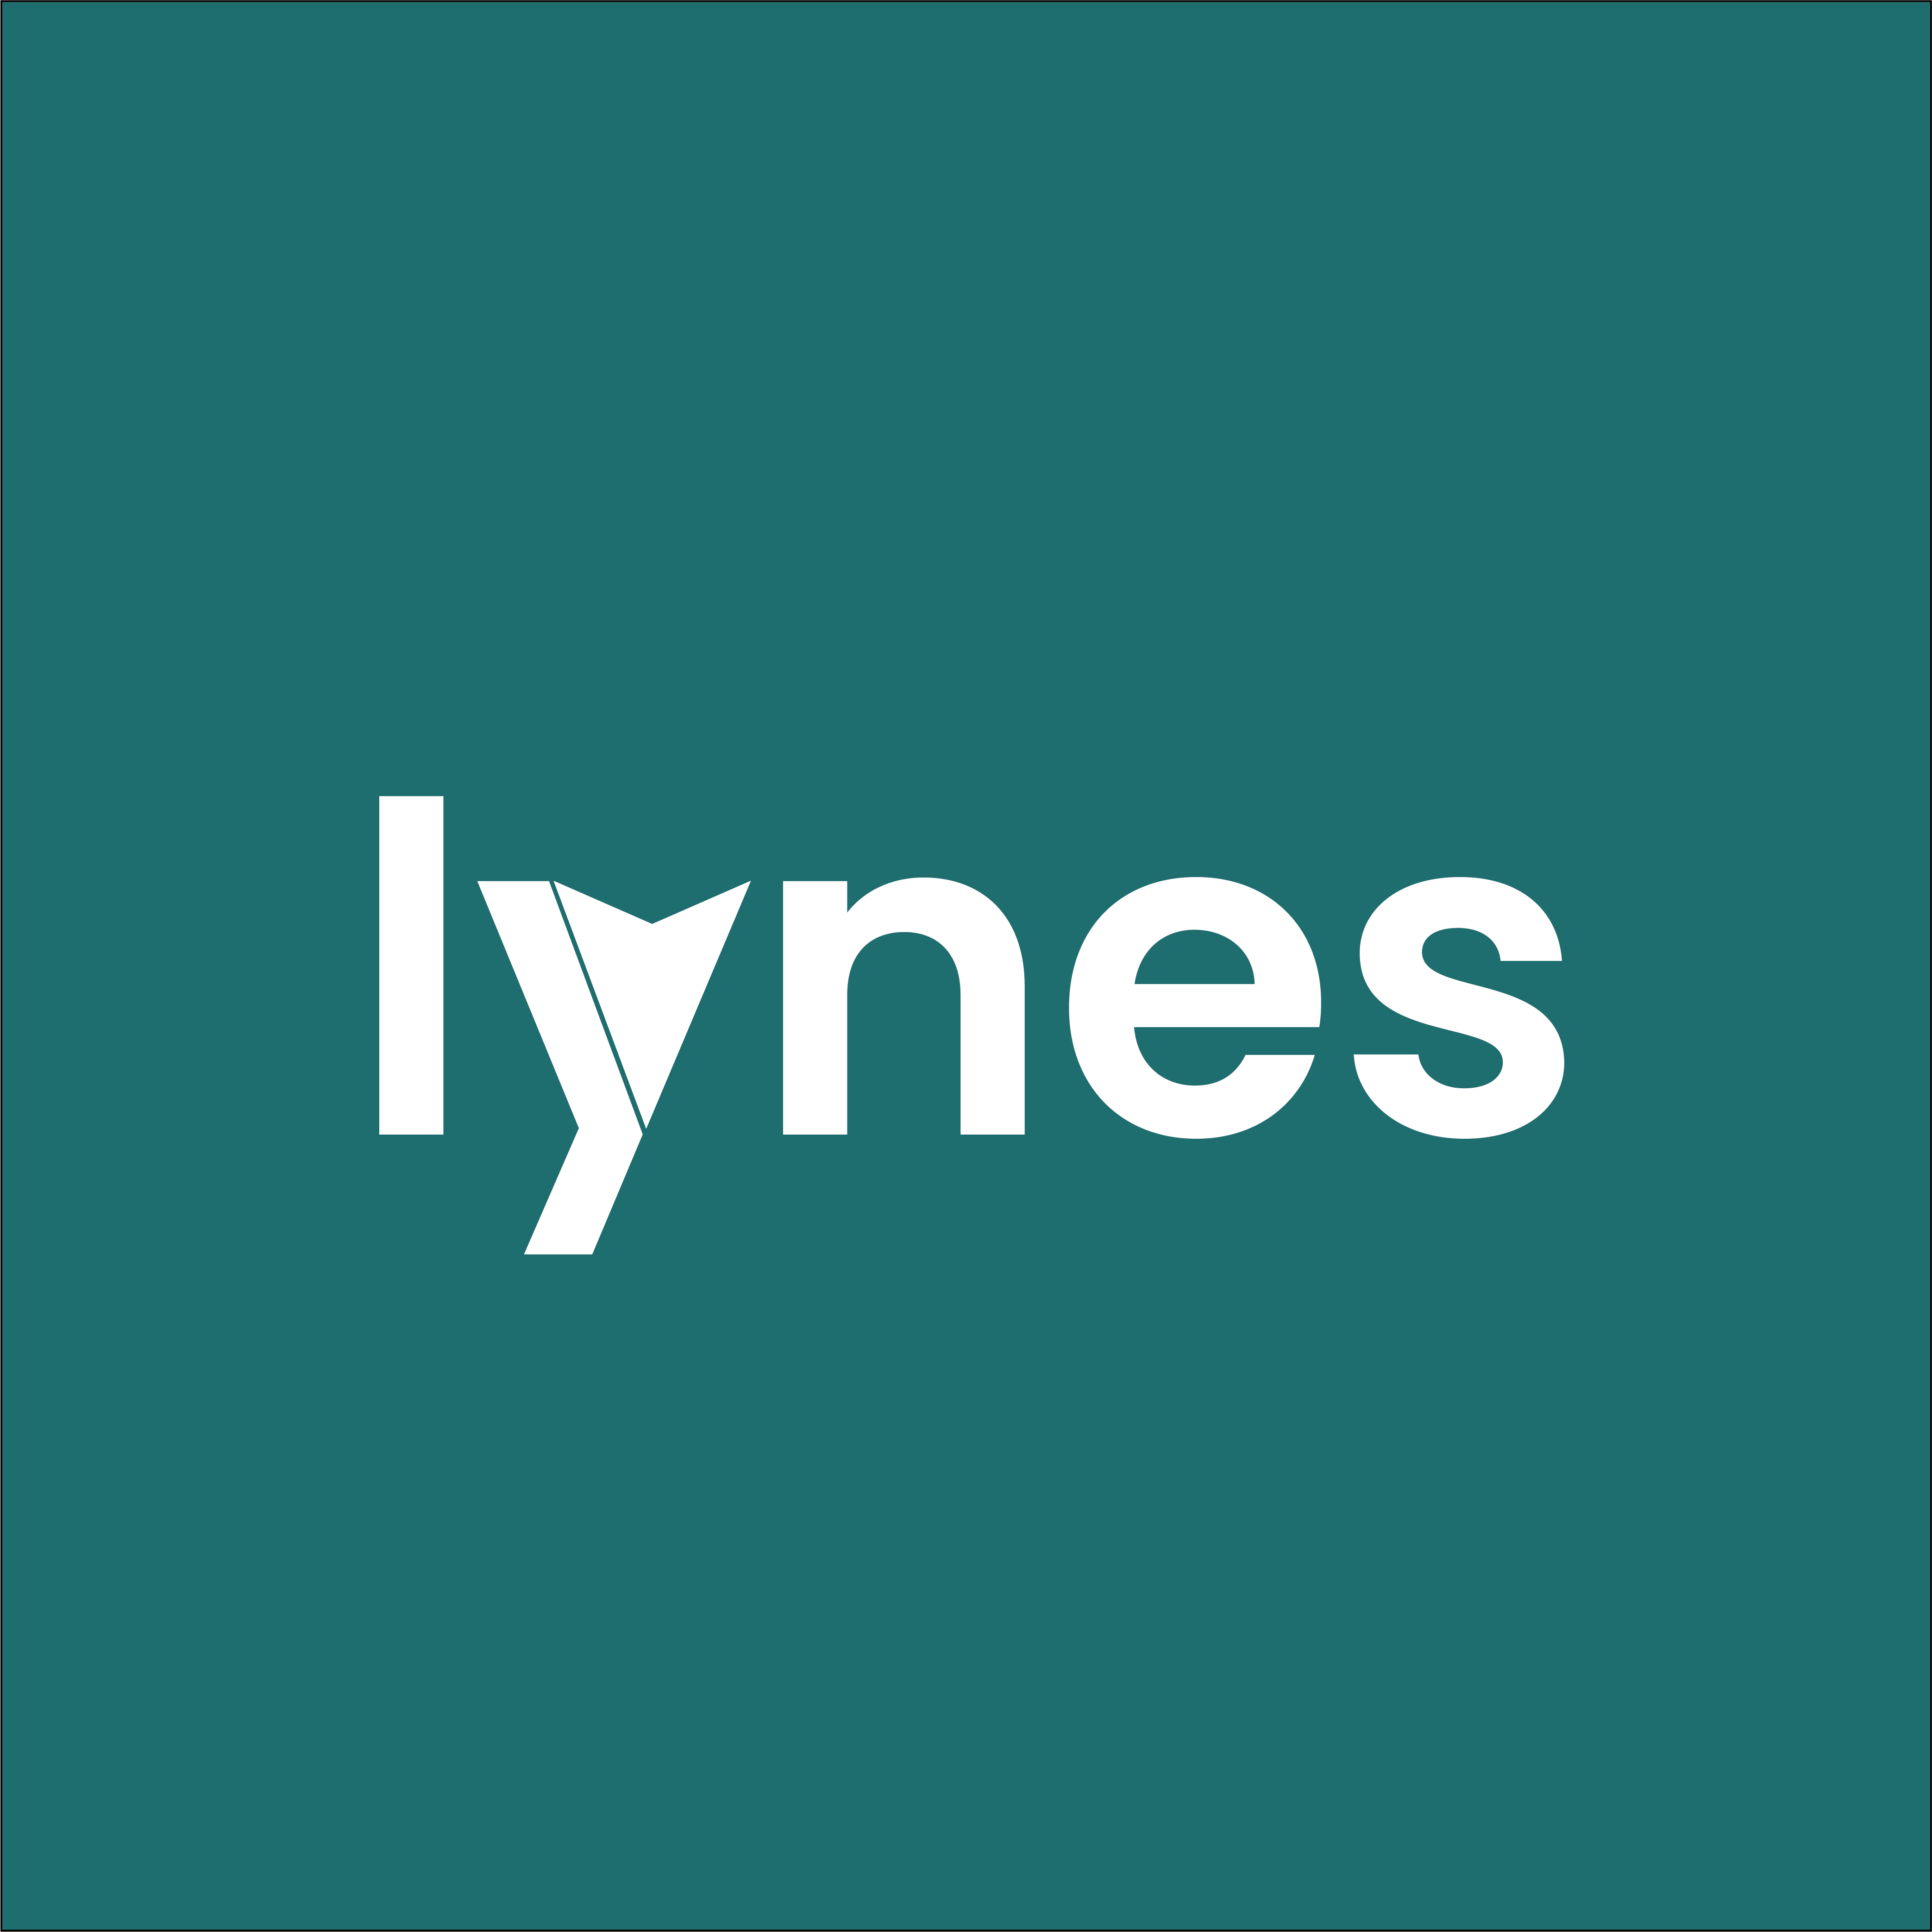 lynes / startup von Detmold / Background